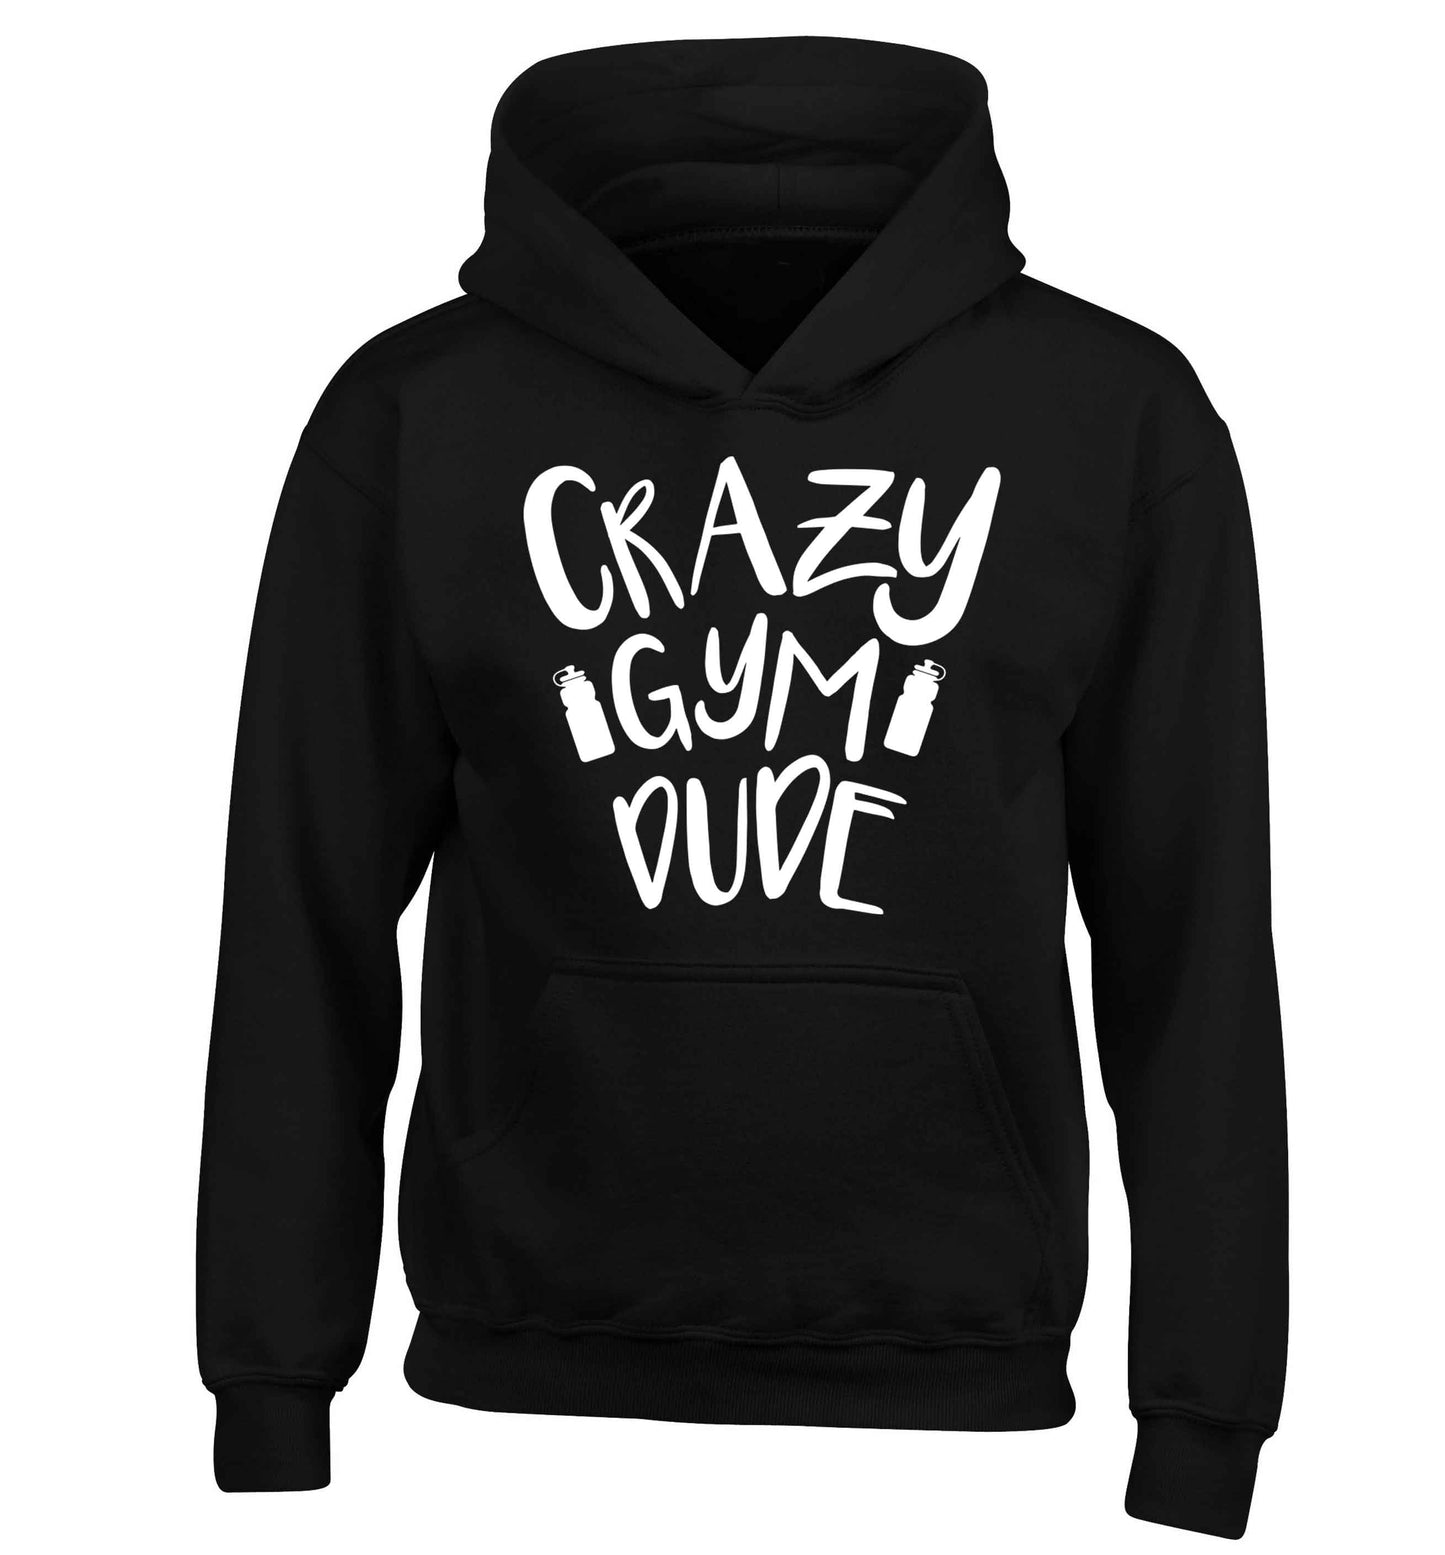 Crazy gym dude children's black hoodie 12-13 Years